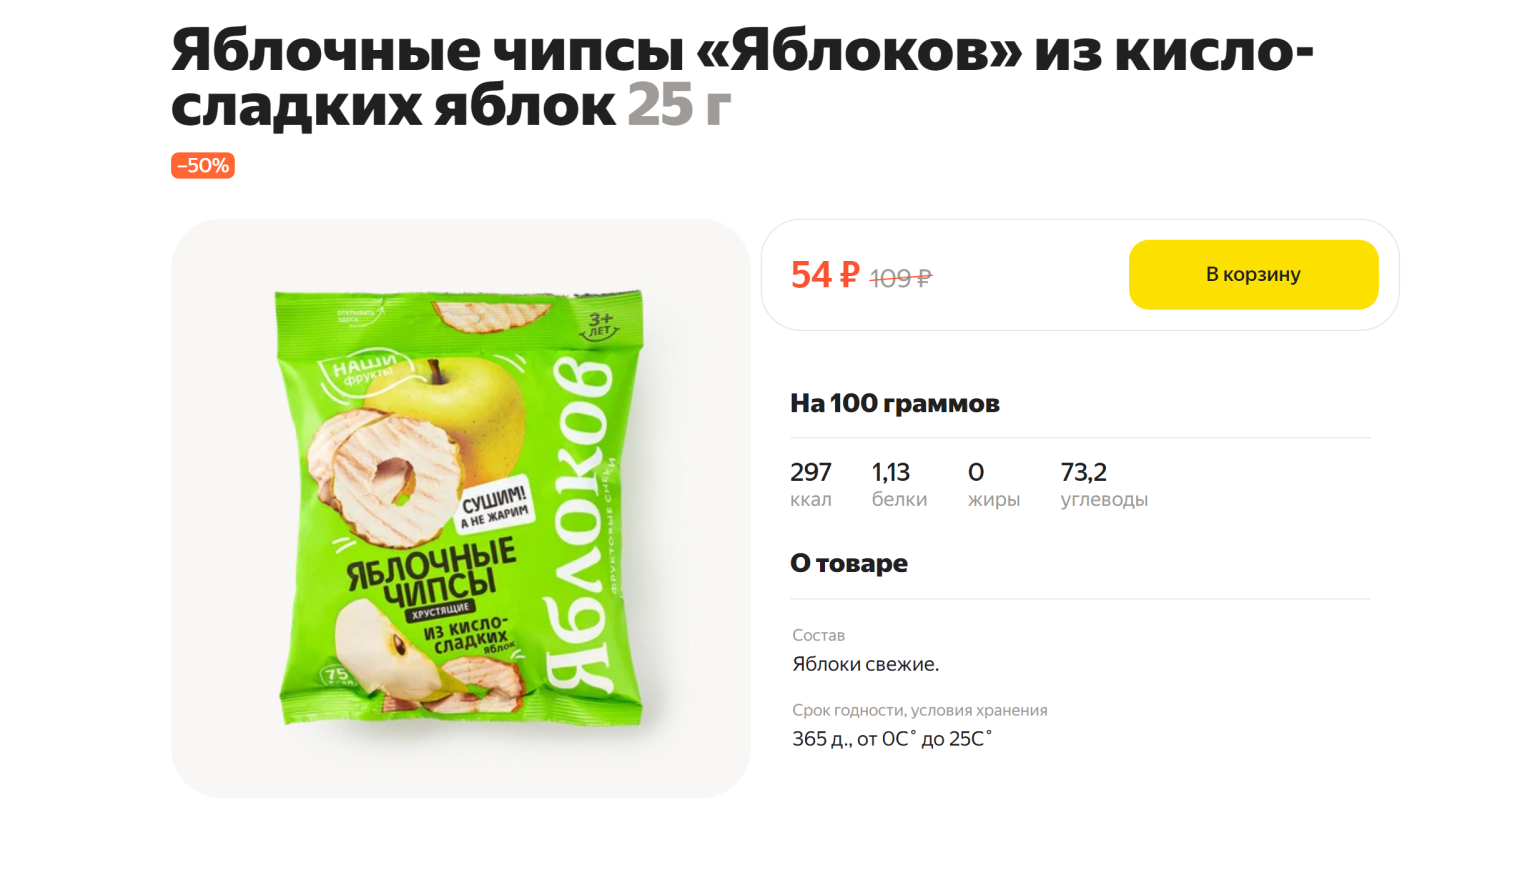 В этих чипсах нет ничего, кроме яблок, — можно брать, если избегаете сахара. Источник: lavka.yandex.ru